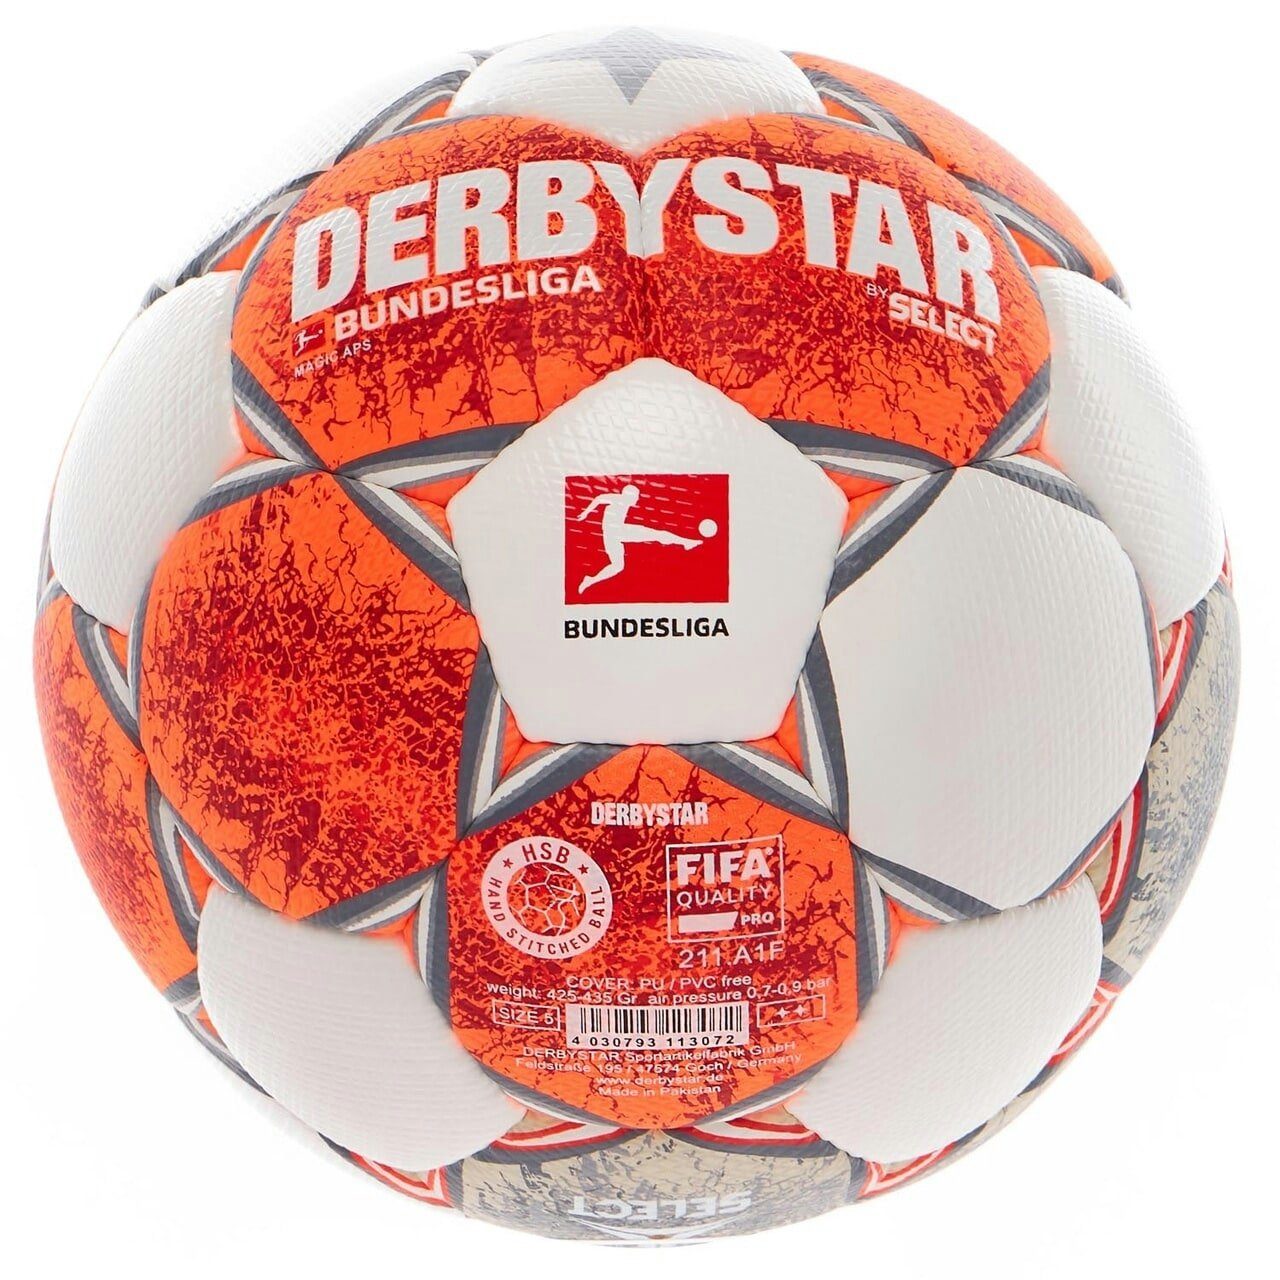 Derbystar Fußball Bundesliga Magic APS bundesliga Spielball, -Qualität Fußball, v21